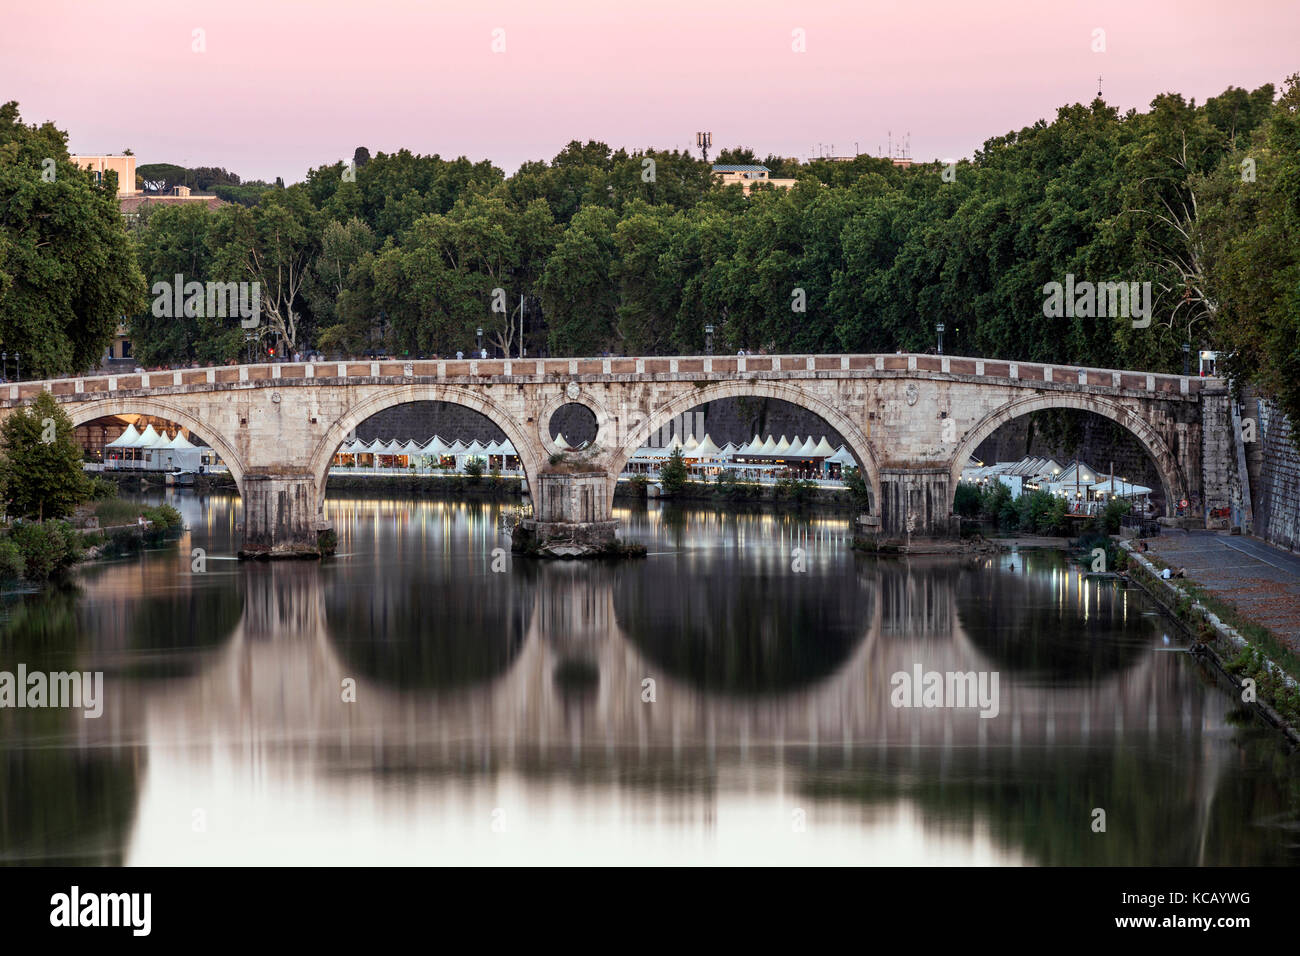 Ponte Sisto (Sisto bridge) spanning the Tiber River in Rome. Stock Photo